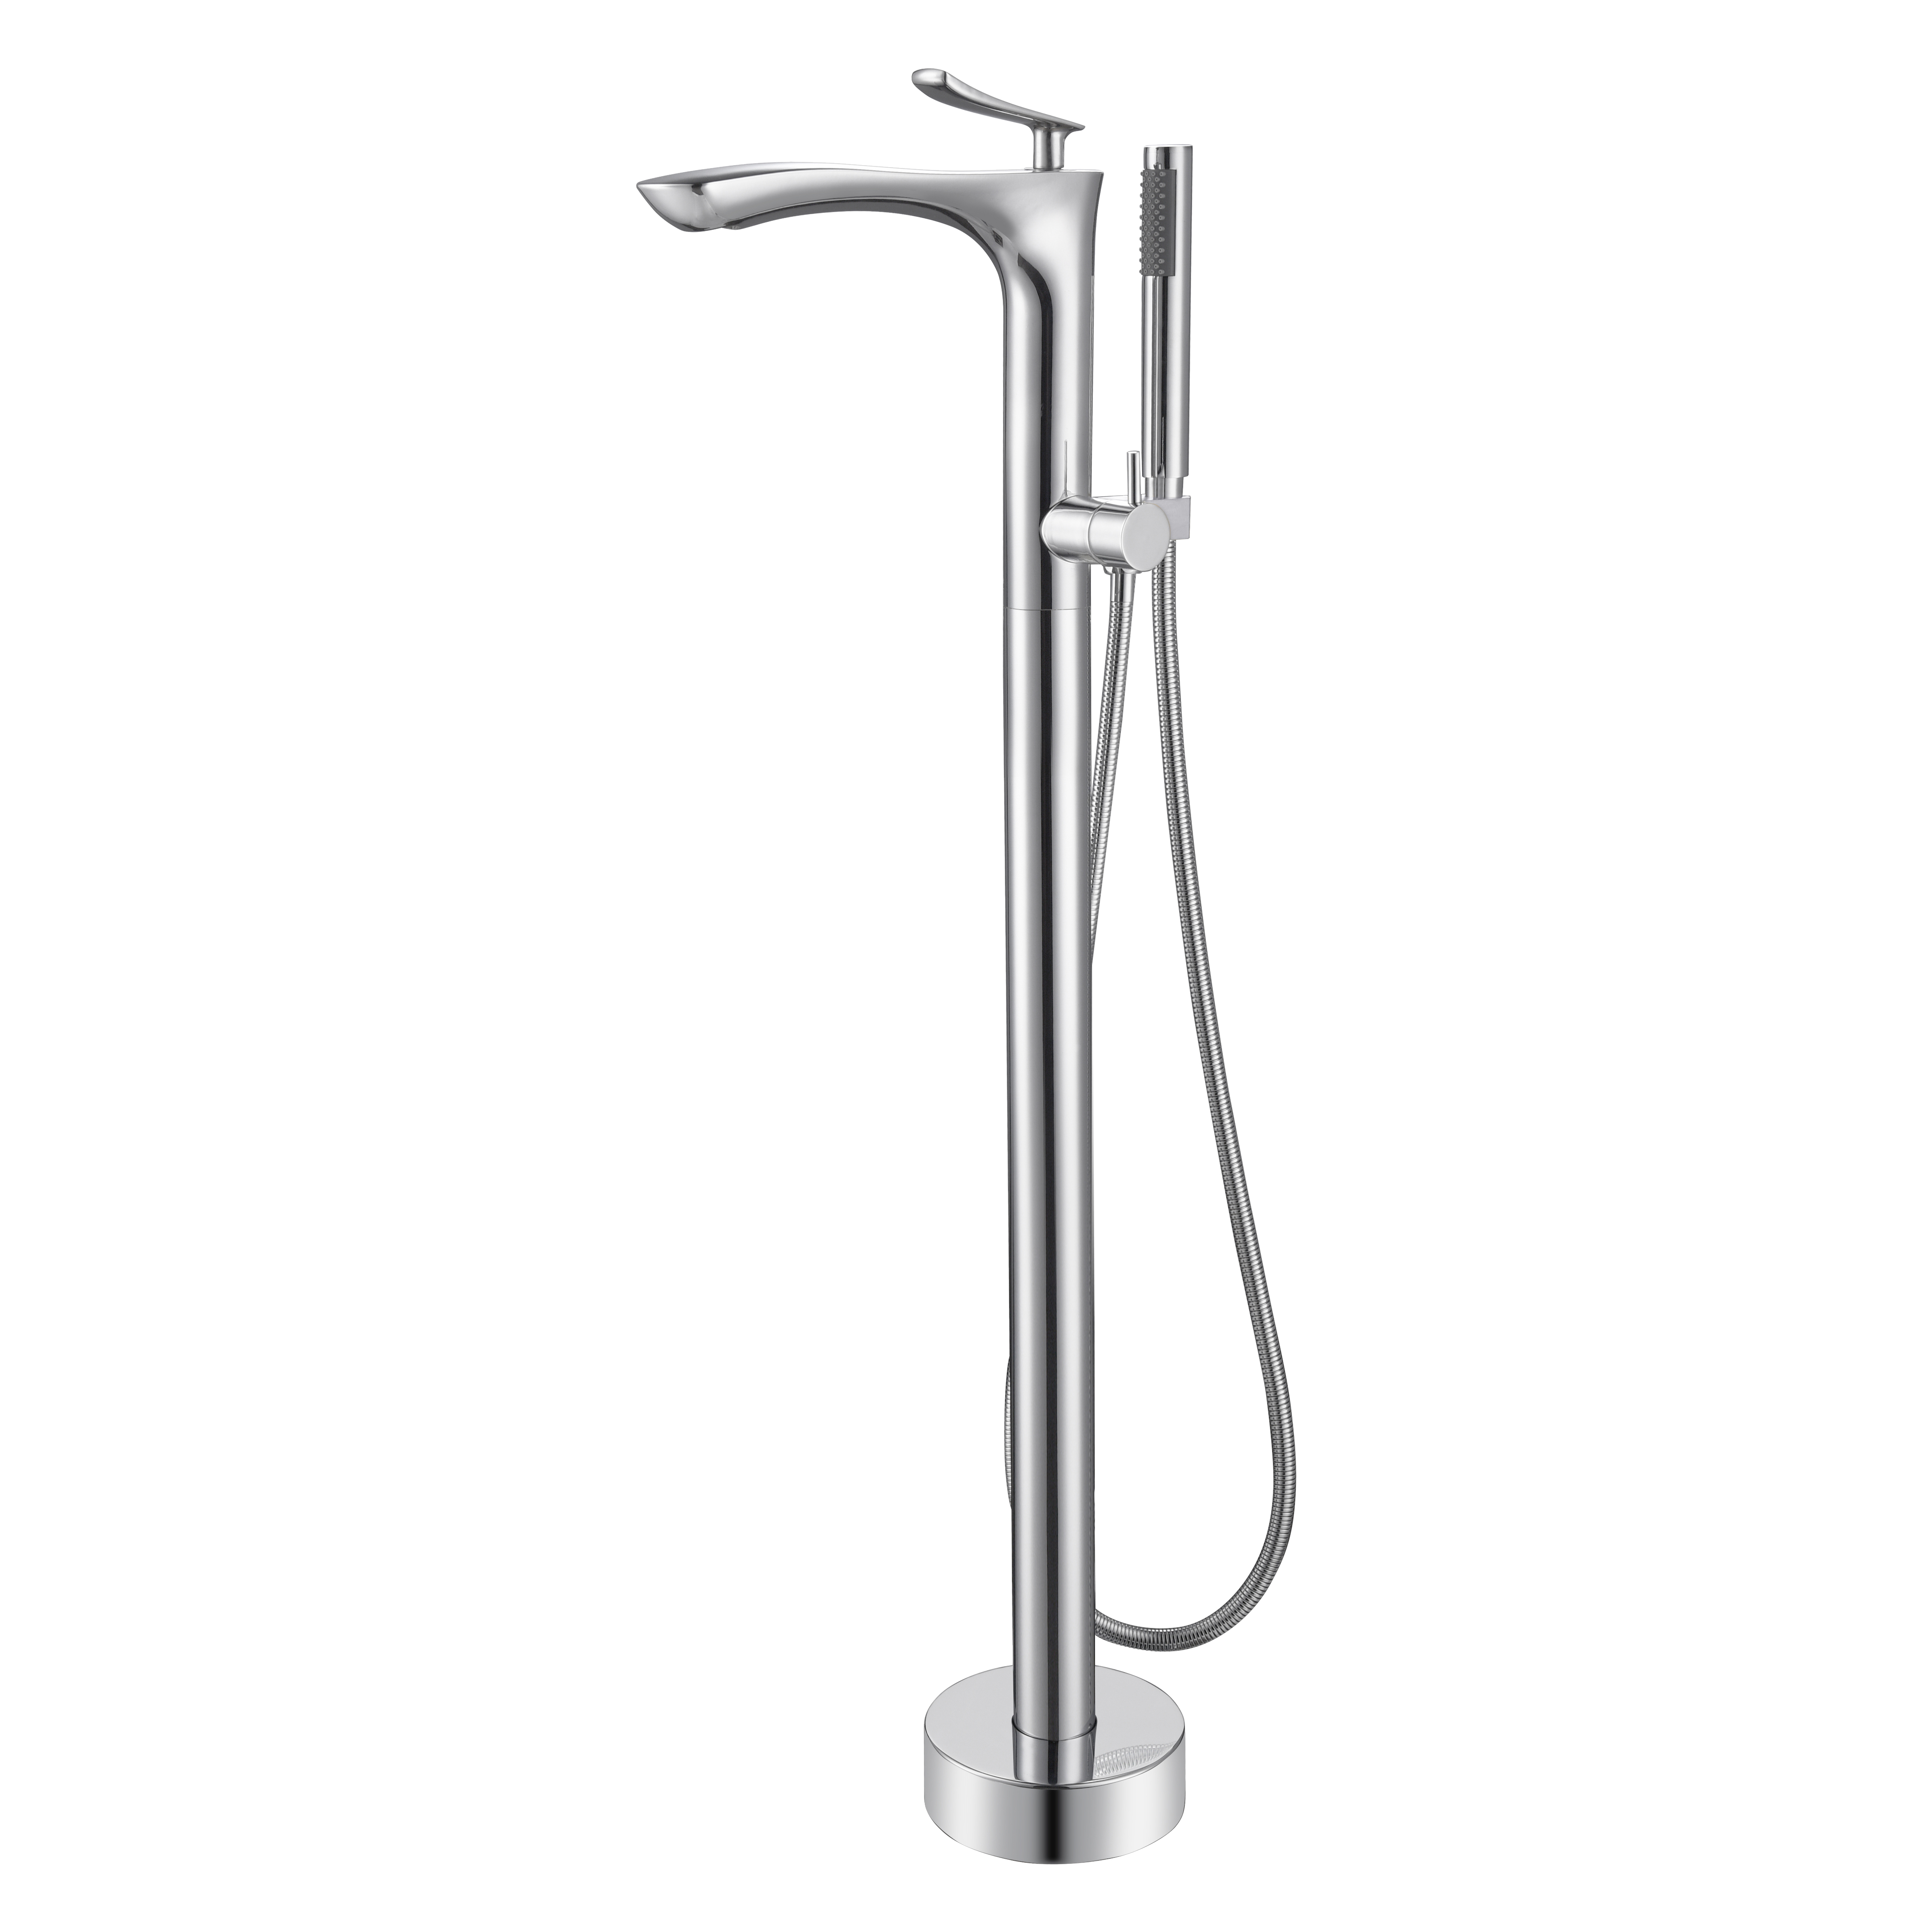 Floor Standing Shower Faucet Mixer for Freestanding Bathtub